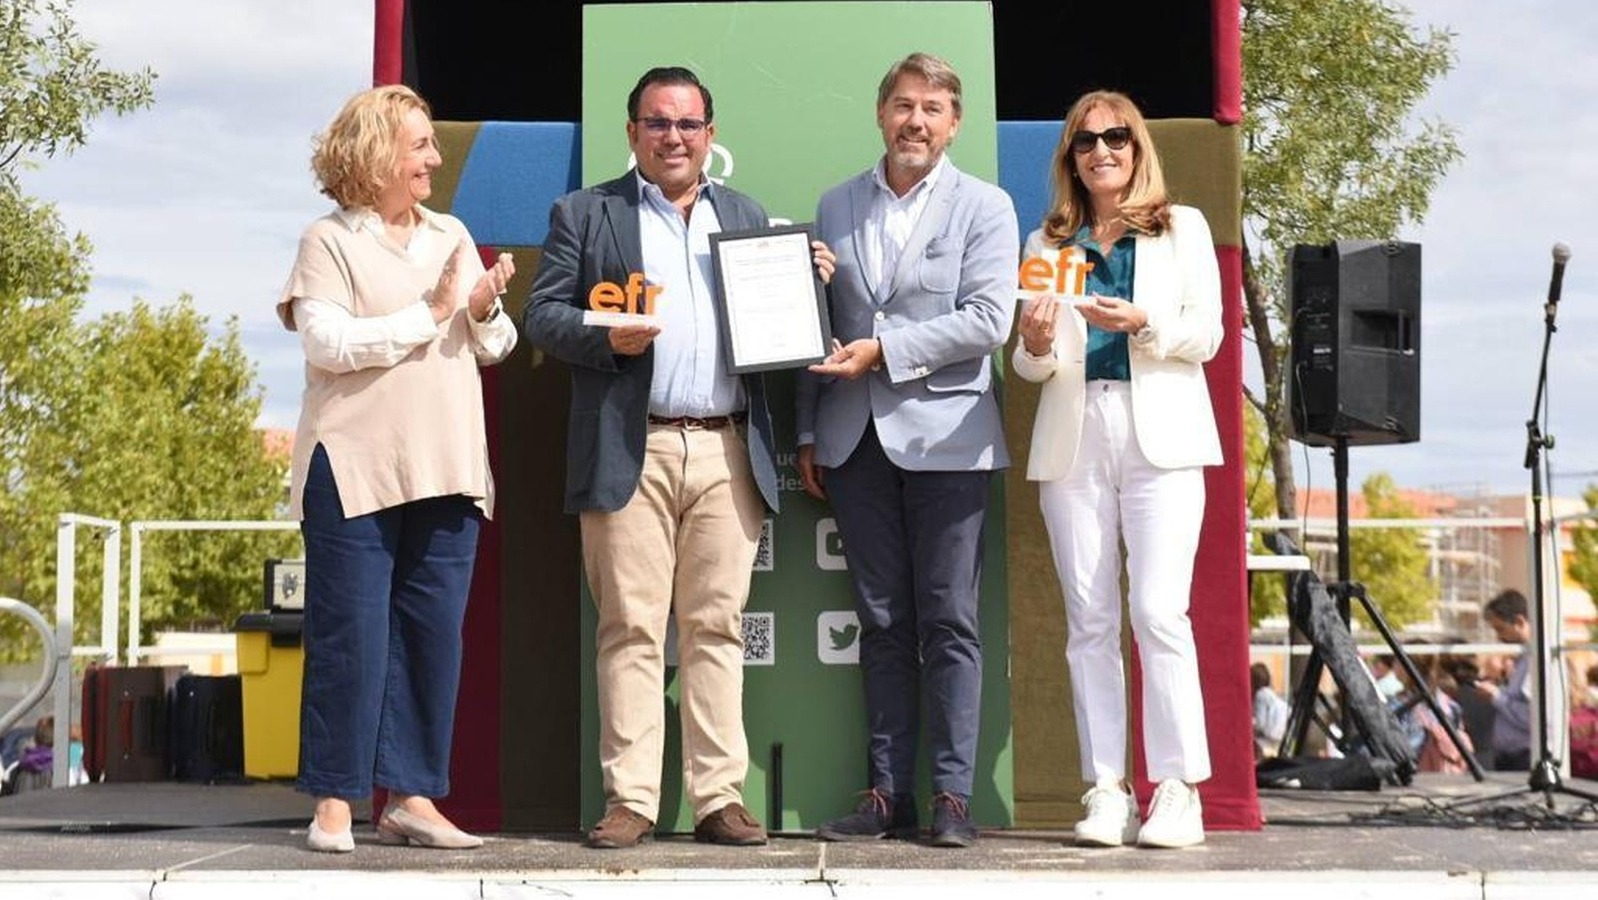 El Ayuntamiento de Boadilla recibe el distintivo EFR por su apoyo a la familia